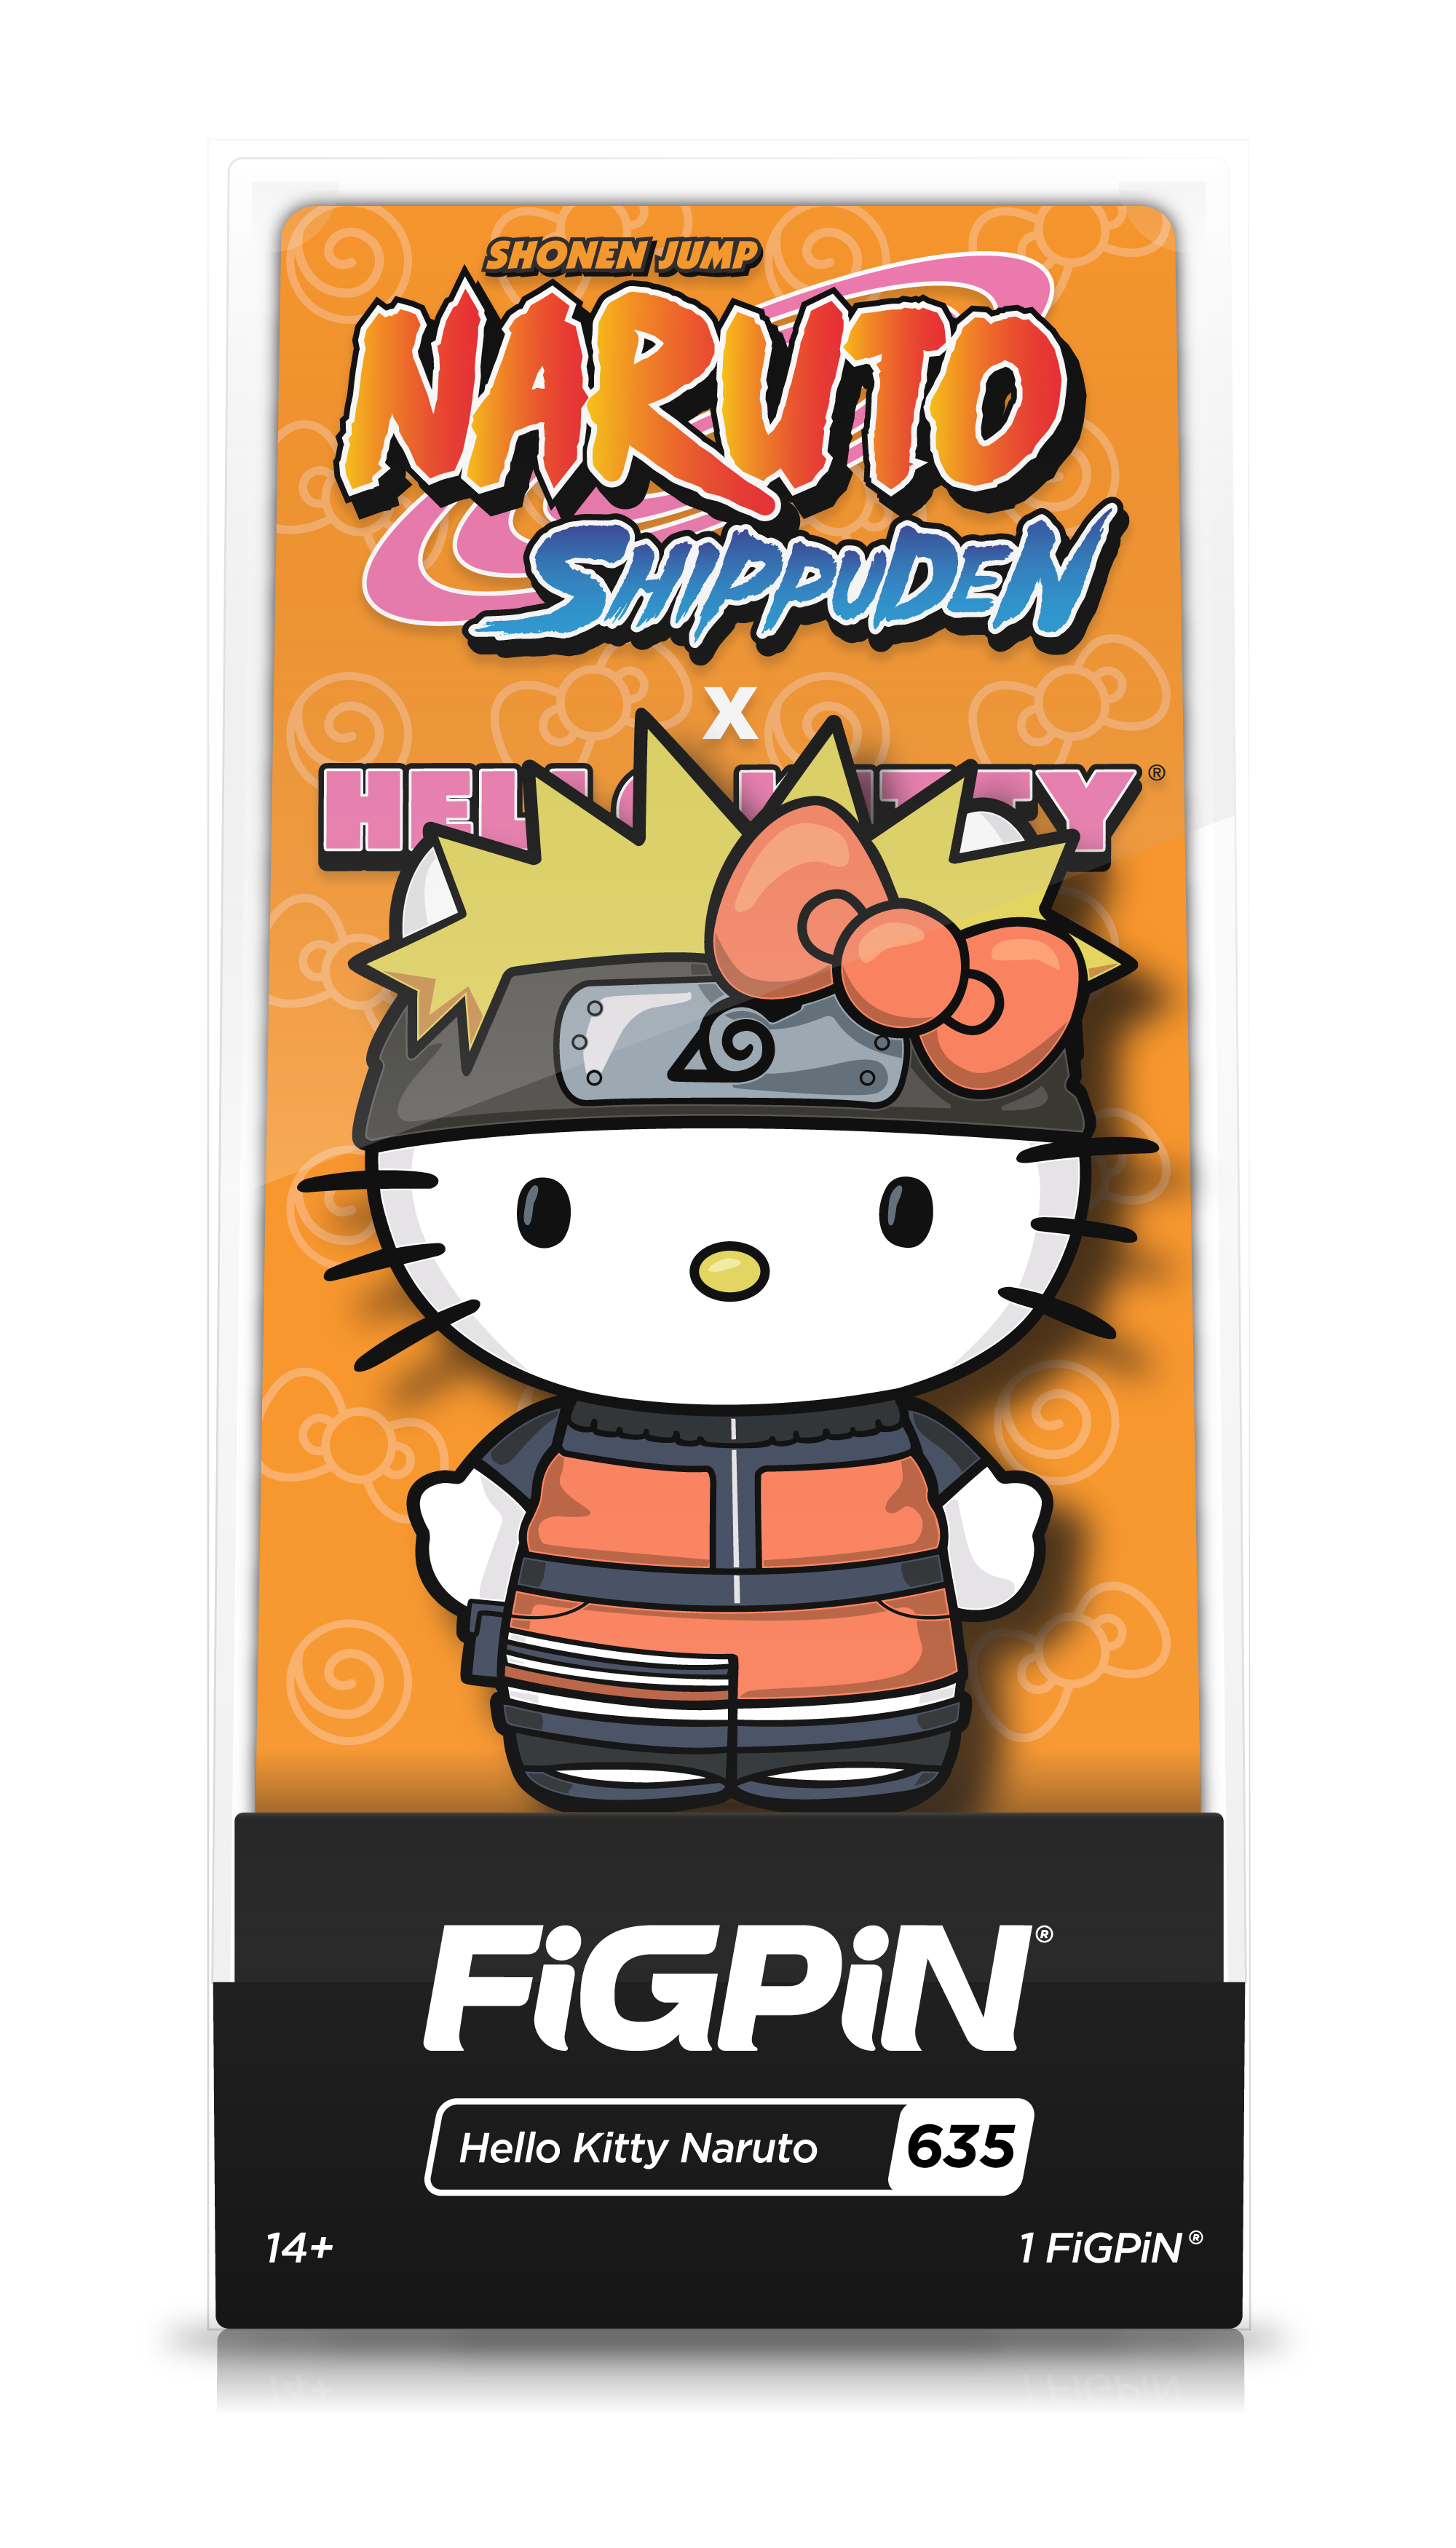 Naruto Shippuden x Hello Kitty: Naruto FiGPiN #635